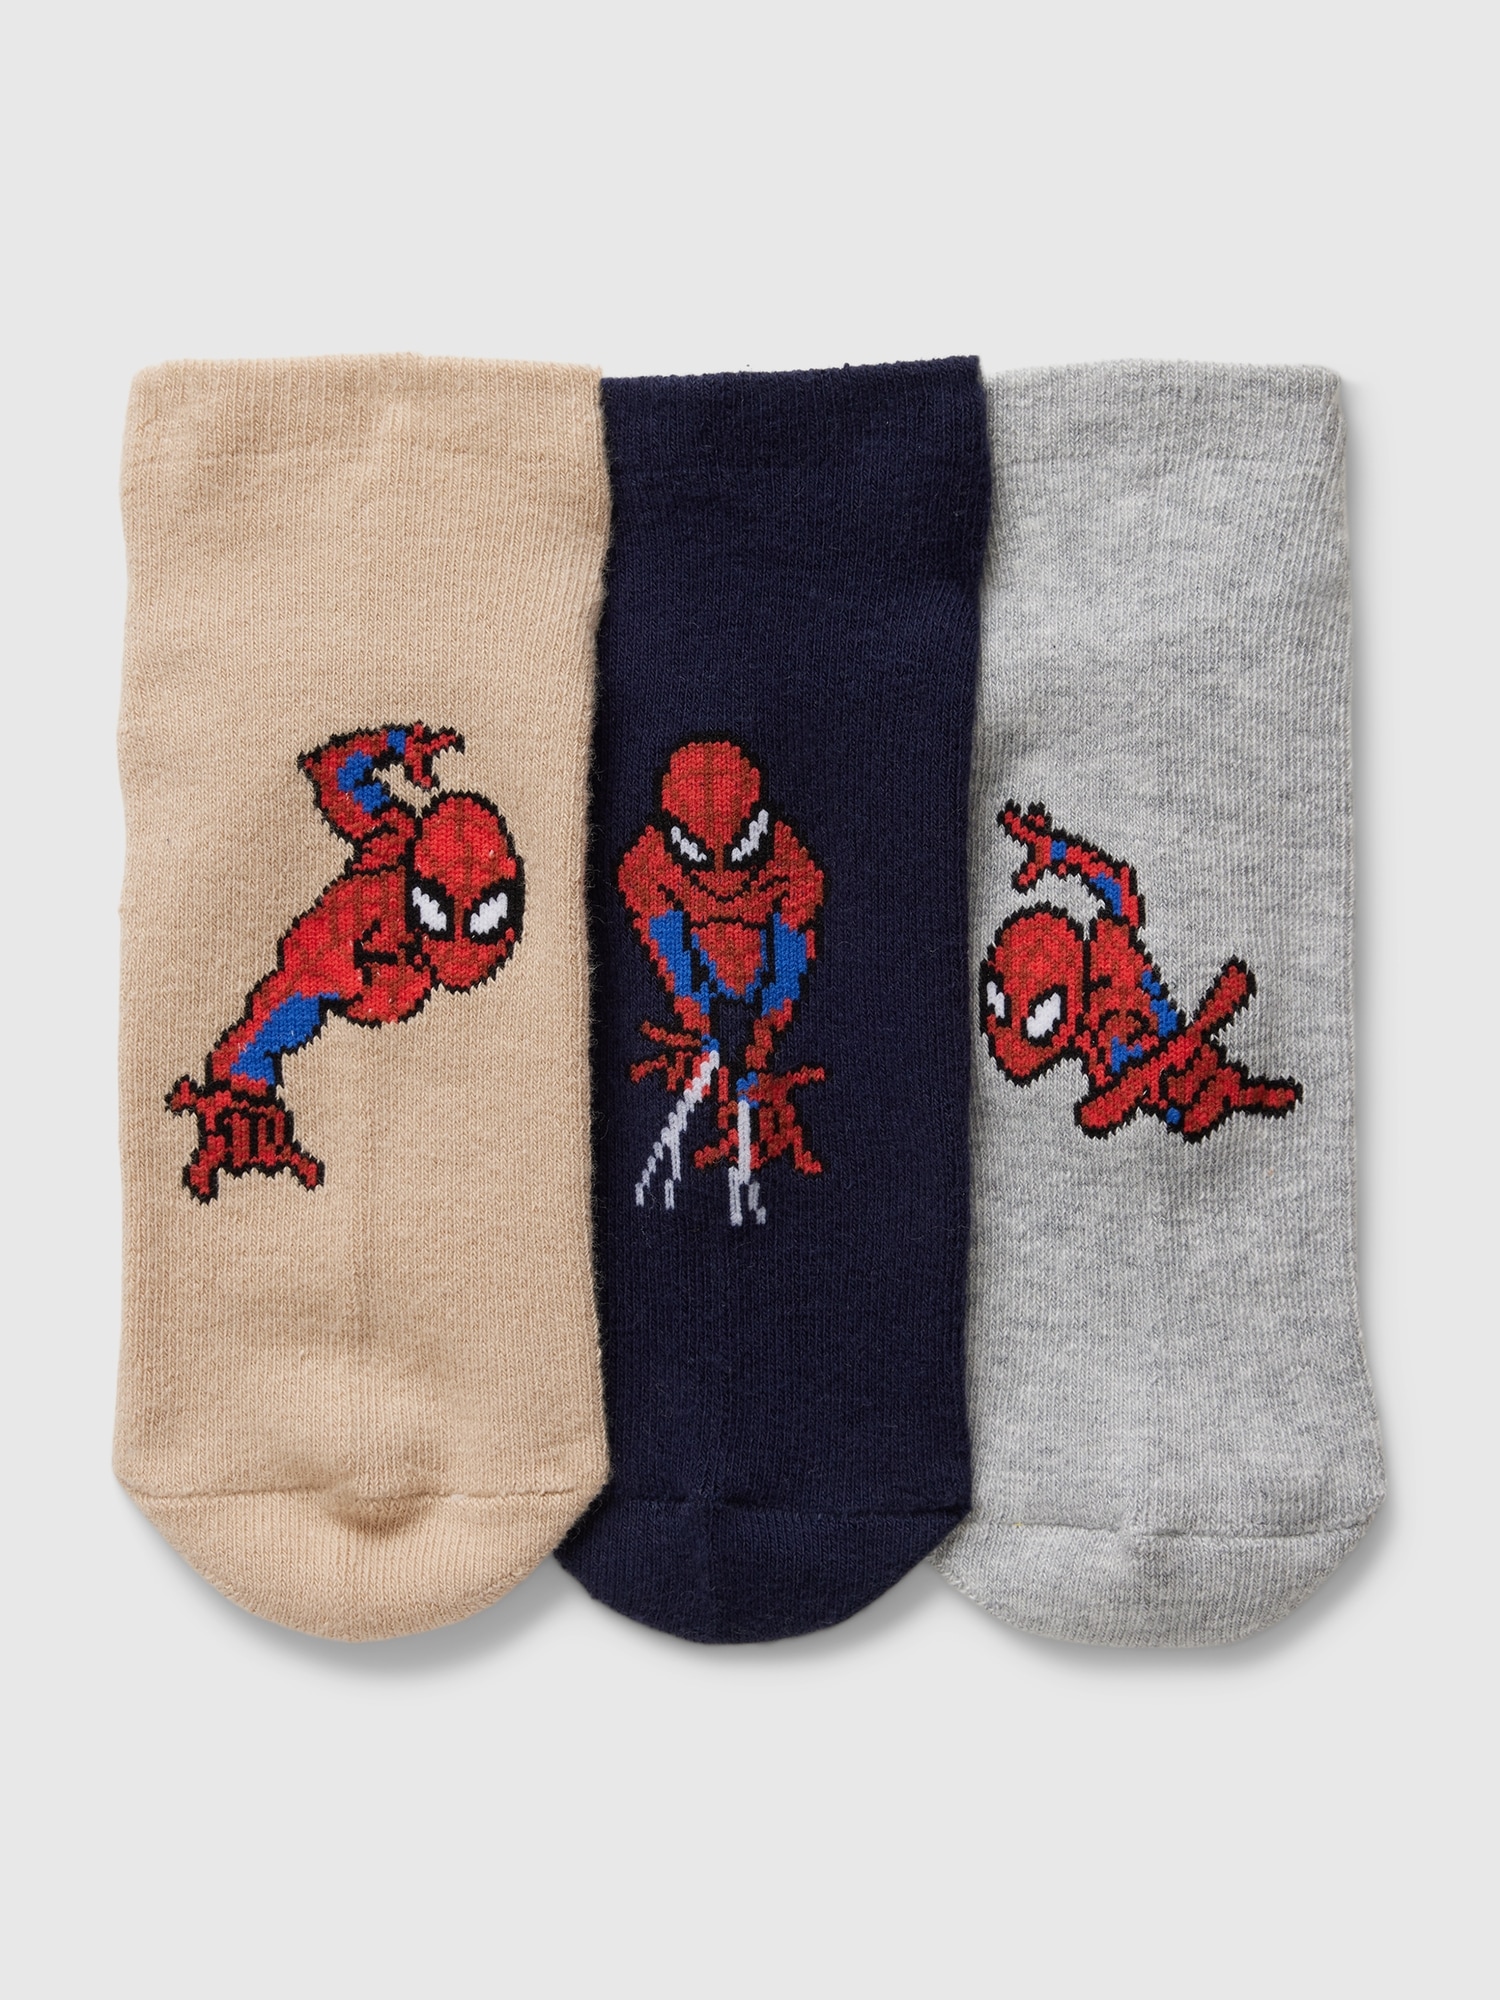 GapKids, Marvel Spider-Man Crew Socks (3-Pack)